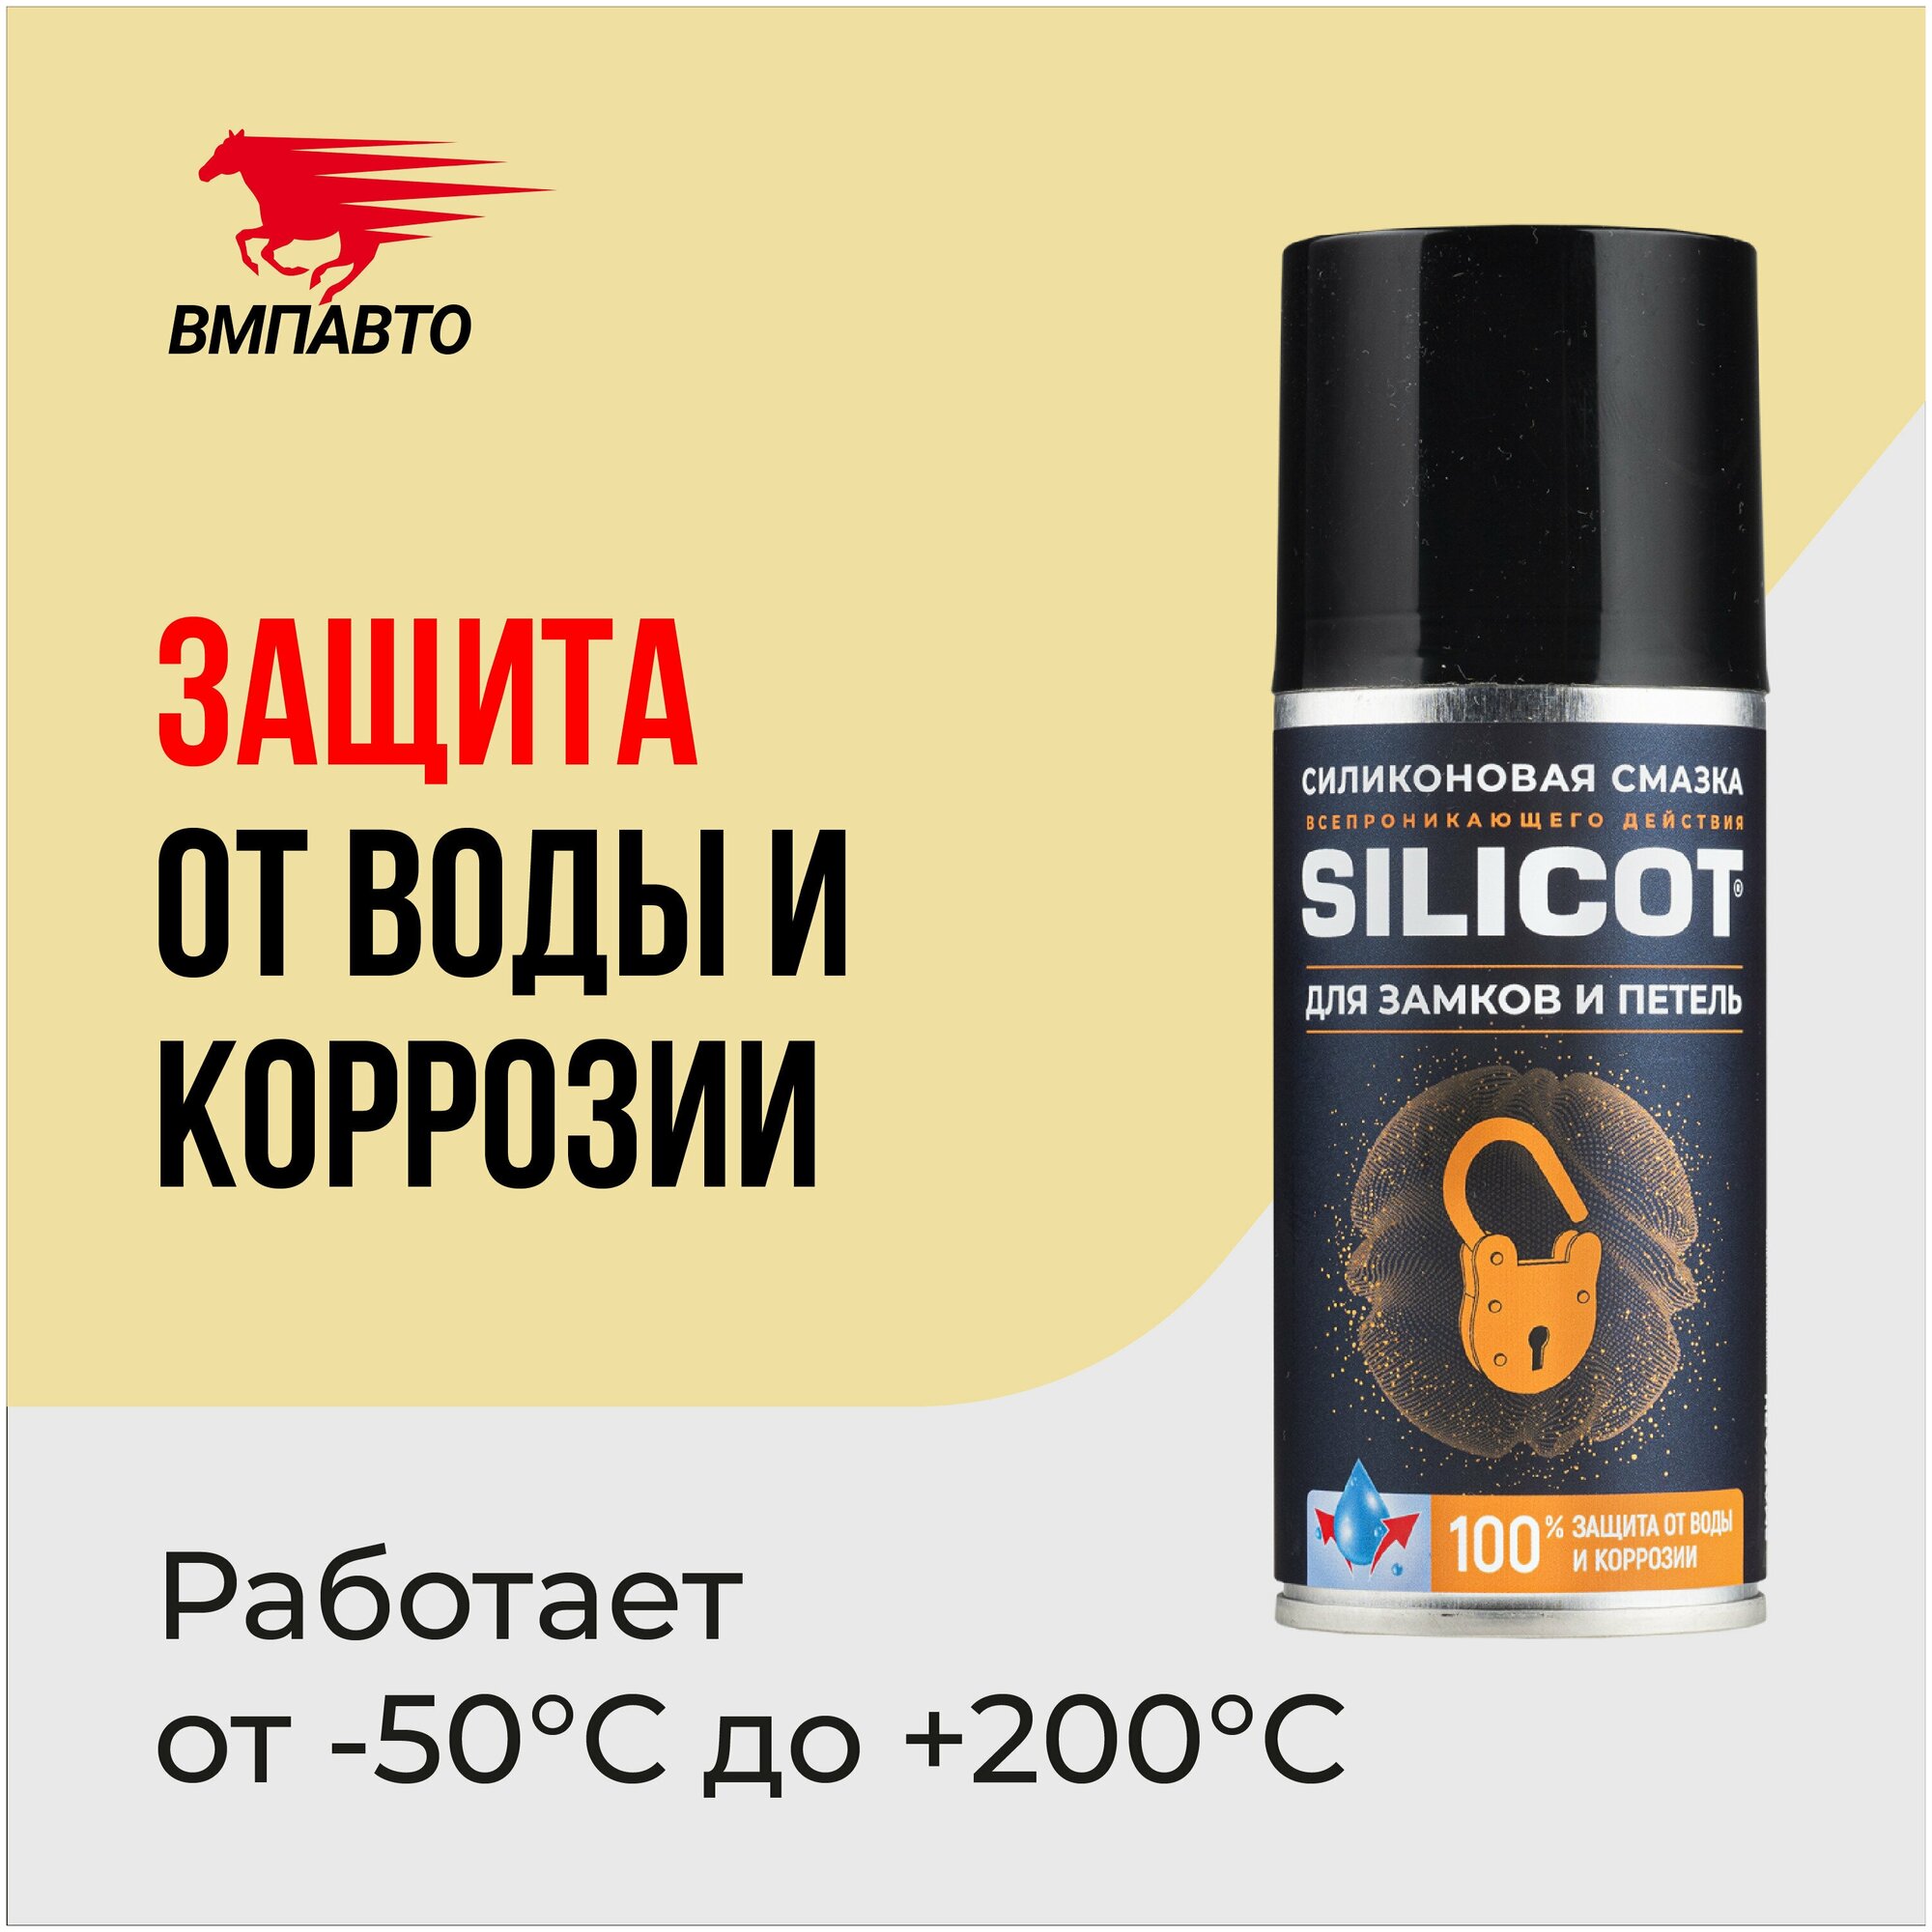 Автомобильнаяазка ВМПАВТО Silicot для замков и петель